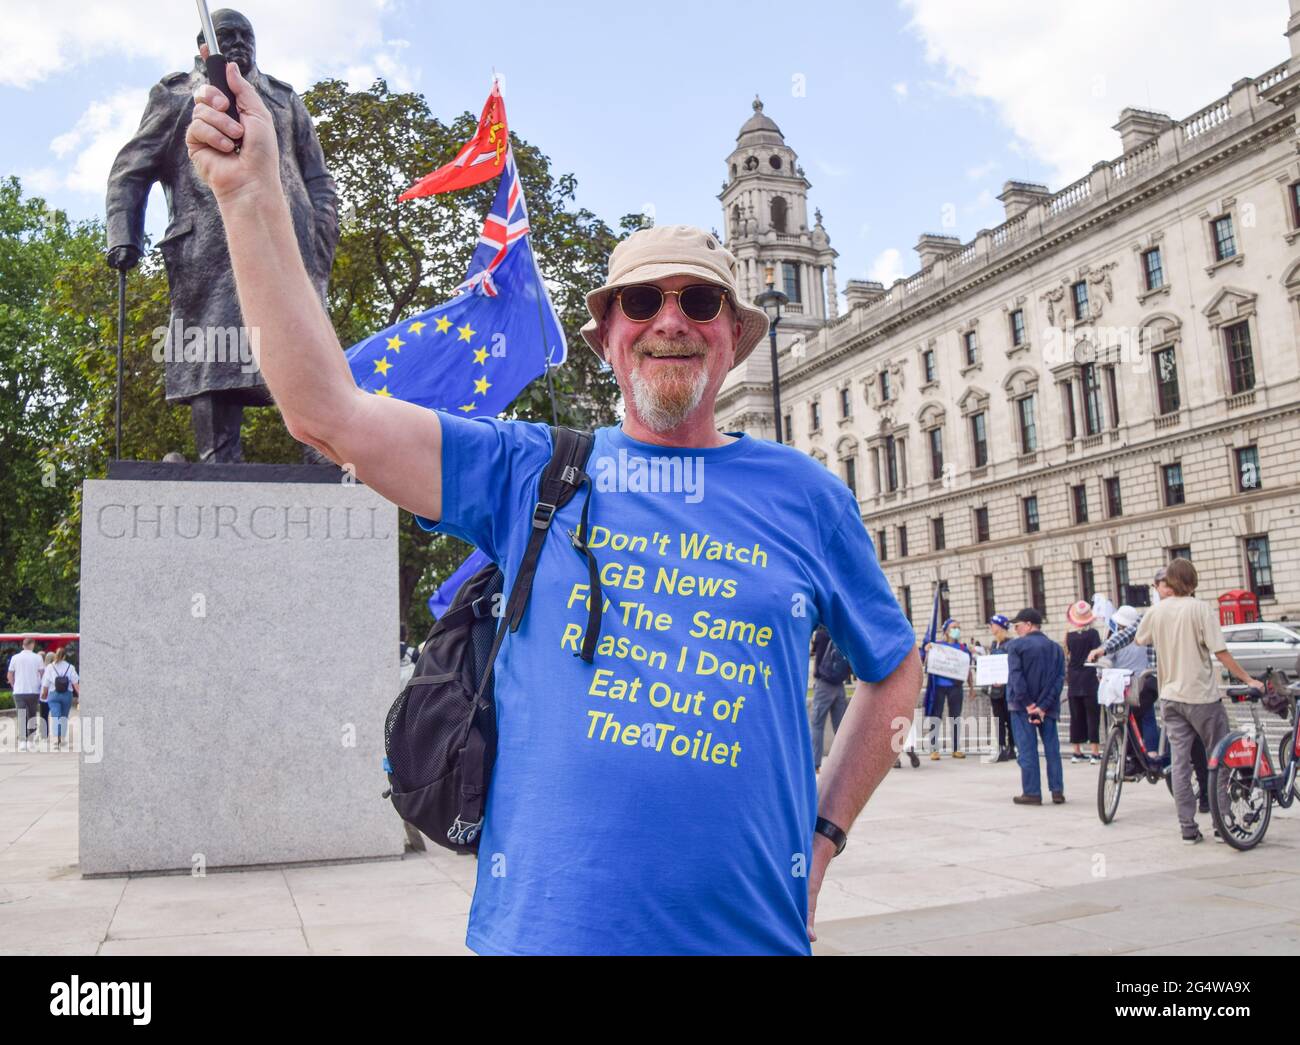 Londres, Reino Unido. 23rd de junio de 2021. Un manifestante lleva una camiseta anti-GB News durante la protesta anti-Brexit frente al parlamento en Londres. Los manifestantes se reunieron en las afueras de las Cámaras del Parlamento en el quinto aniversario del referéndum. Crédito: SOPA Images Limited/Alamy Live News Foto de stock